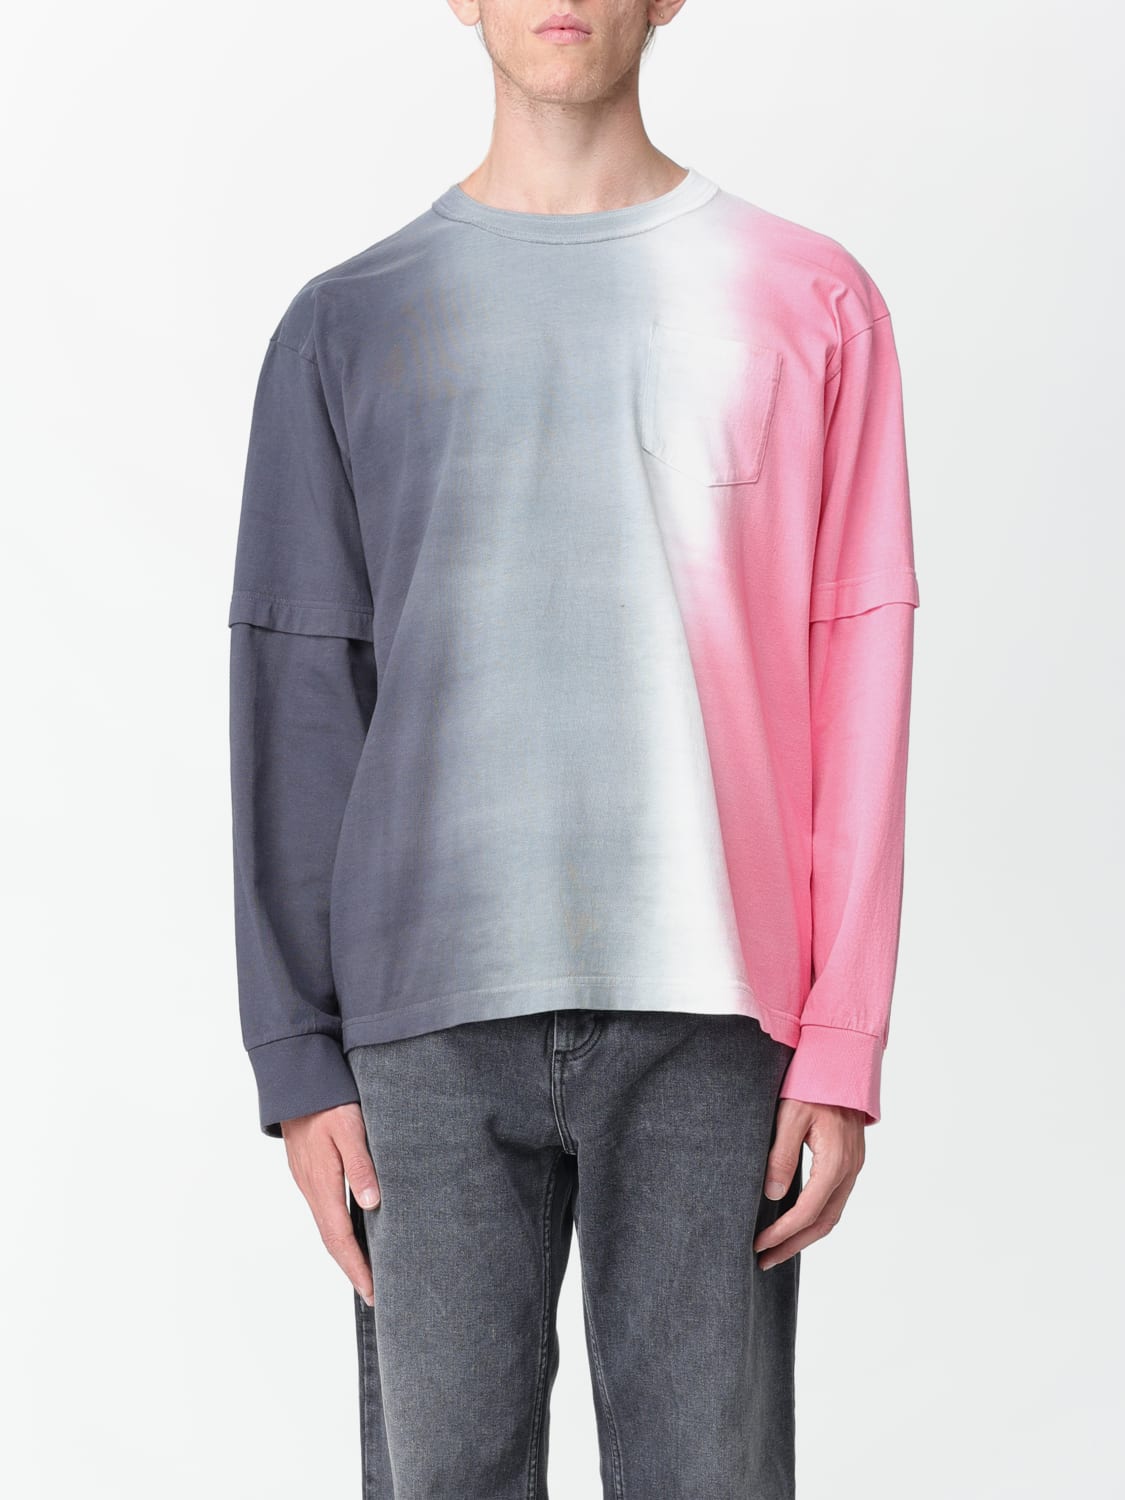 SACAI: t-shirt for man - Grey | Sacai t-shirt 2303177M online at